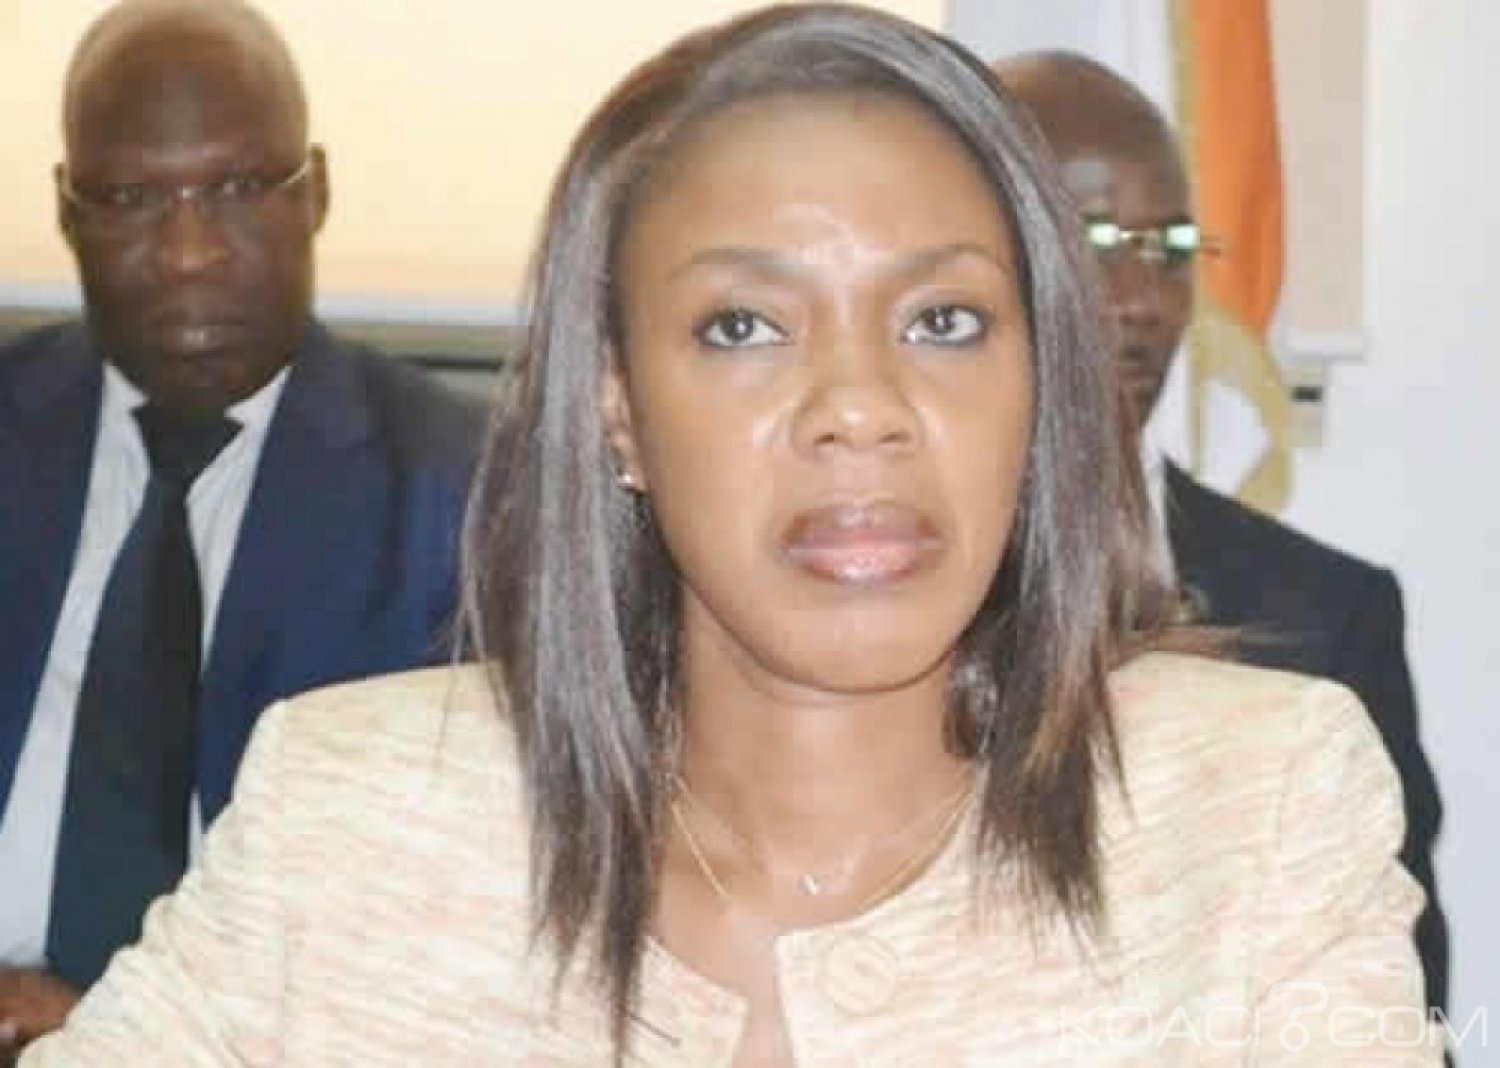 Côte d'Ivoire: APF, plainte contre l'arrêté du 17 avril 2019 de Soumahoro, rejet de la requête pour «incompétence»